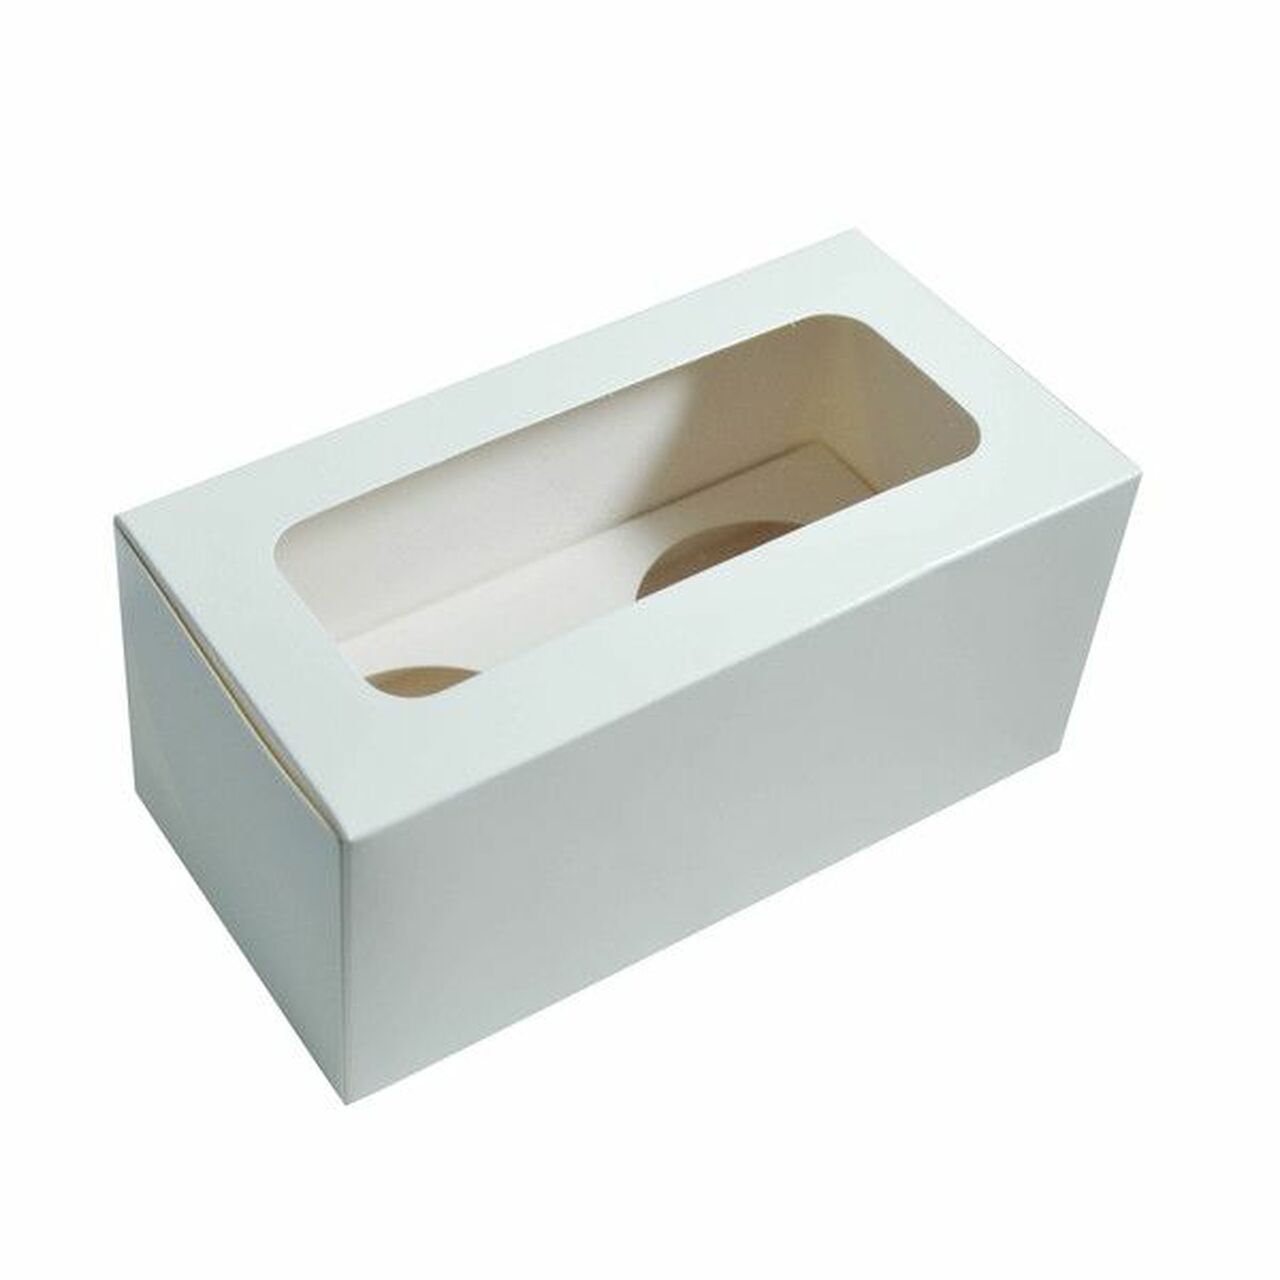 2PK CUPCAKE WHITE BOXES 8X4X4 (100)